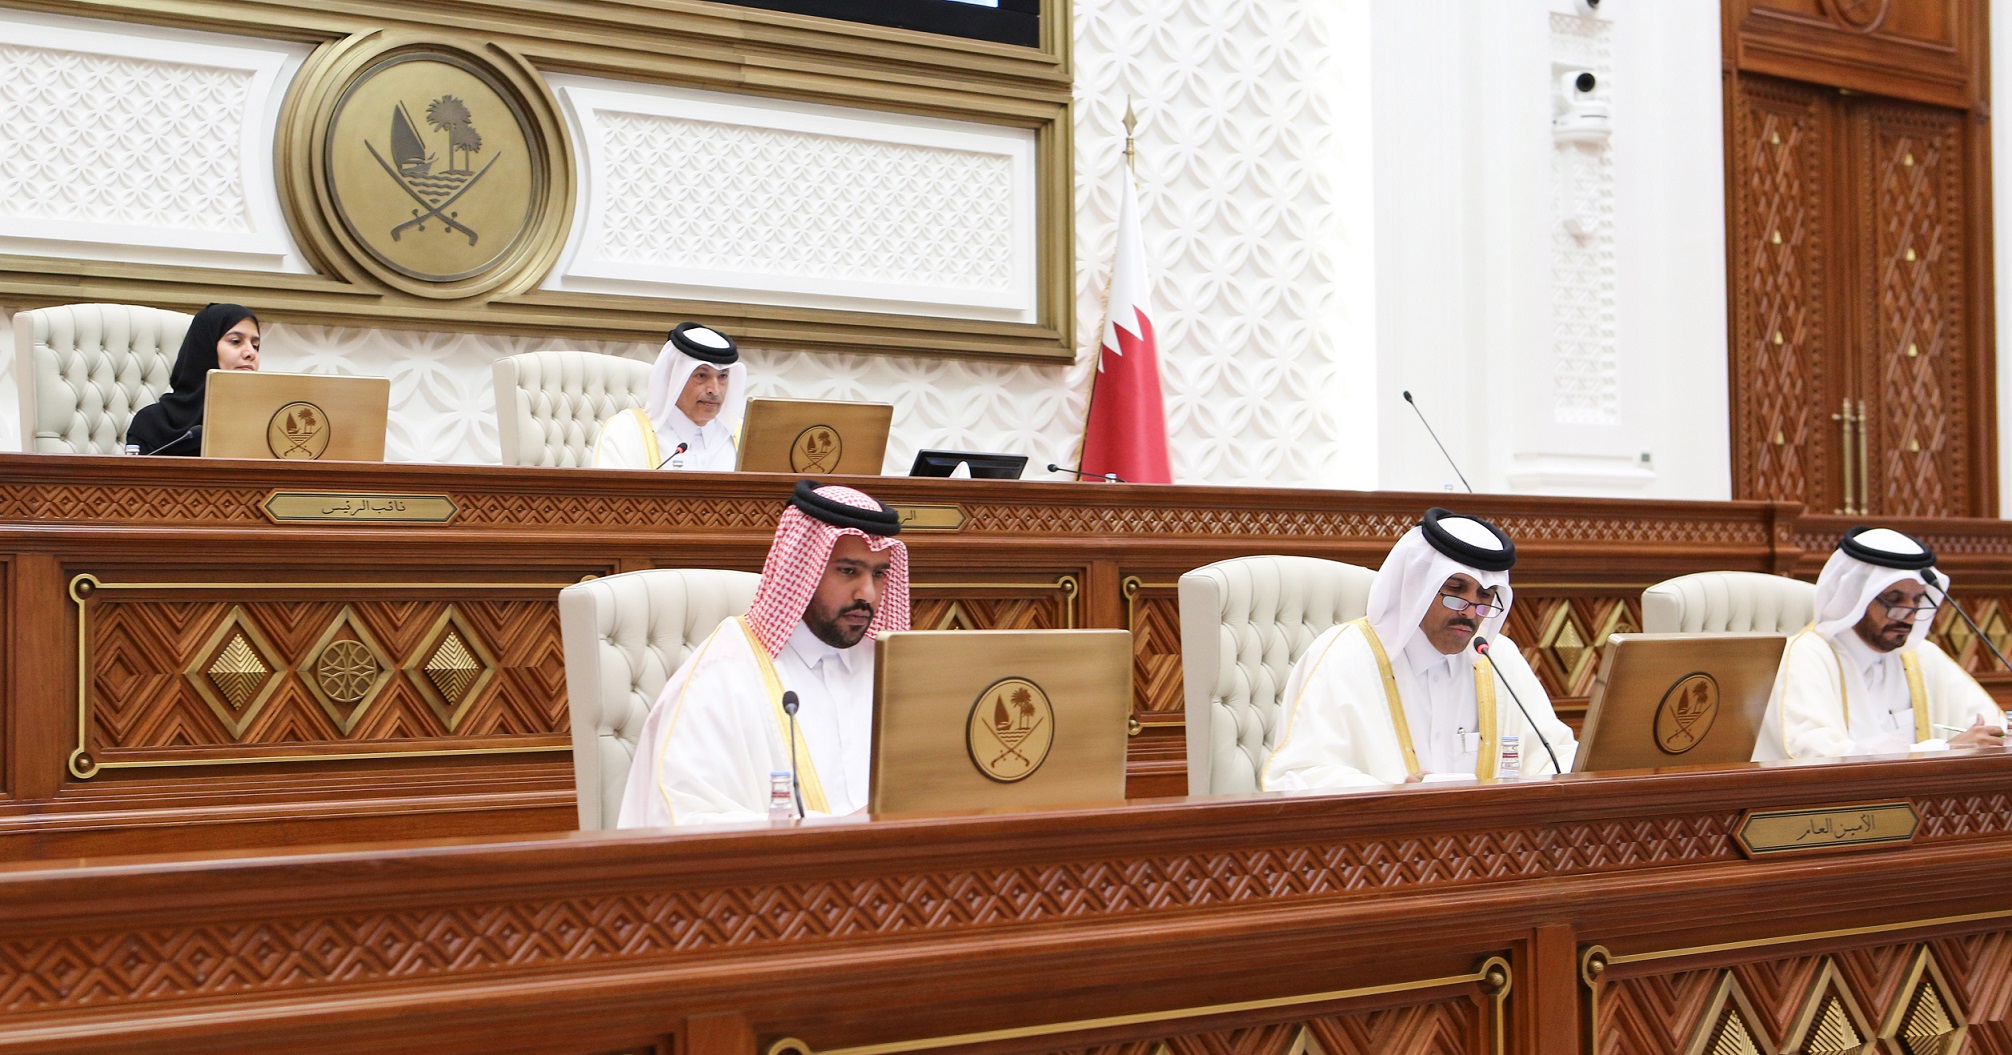 مجلس الشورى يشيد بمشاركة سمو الأمير في القمة الخليجية وقمة الرياض الخليجية الصينية للتعاون والتنمية